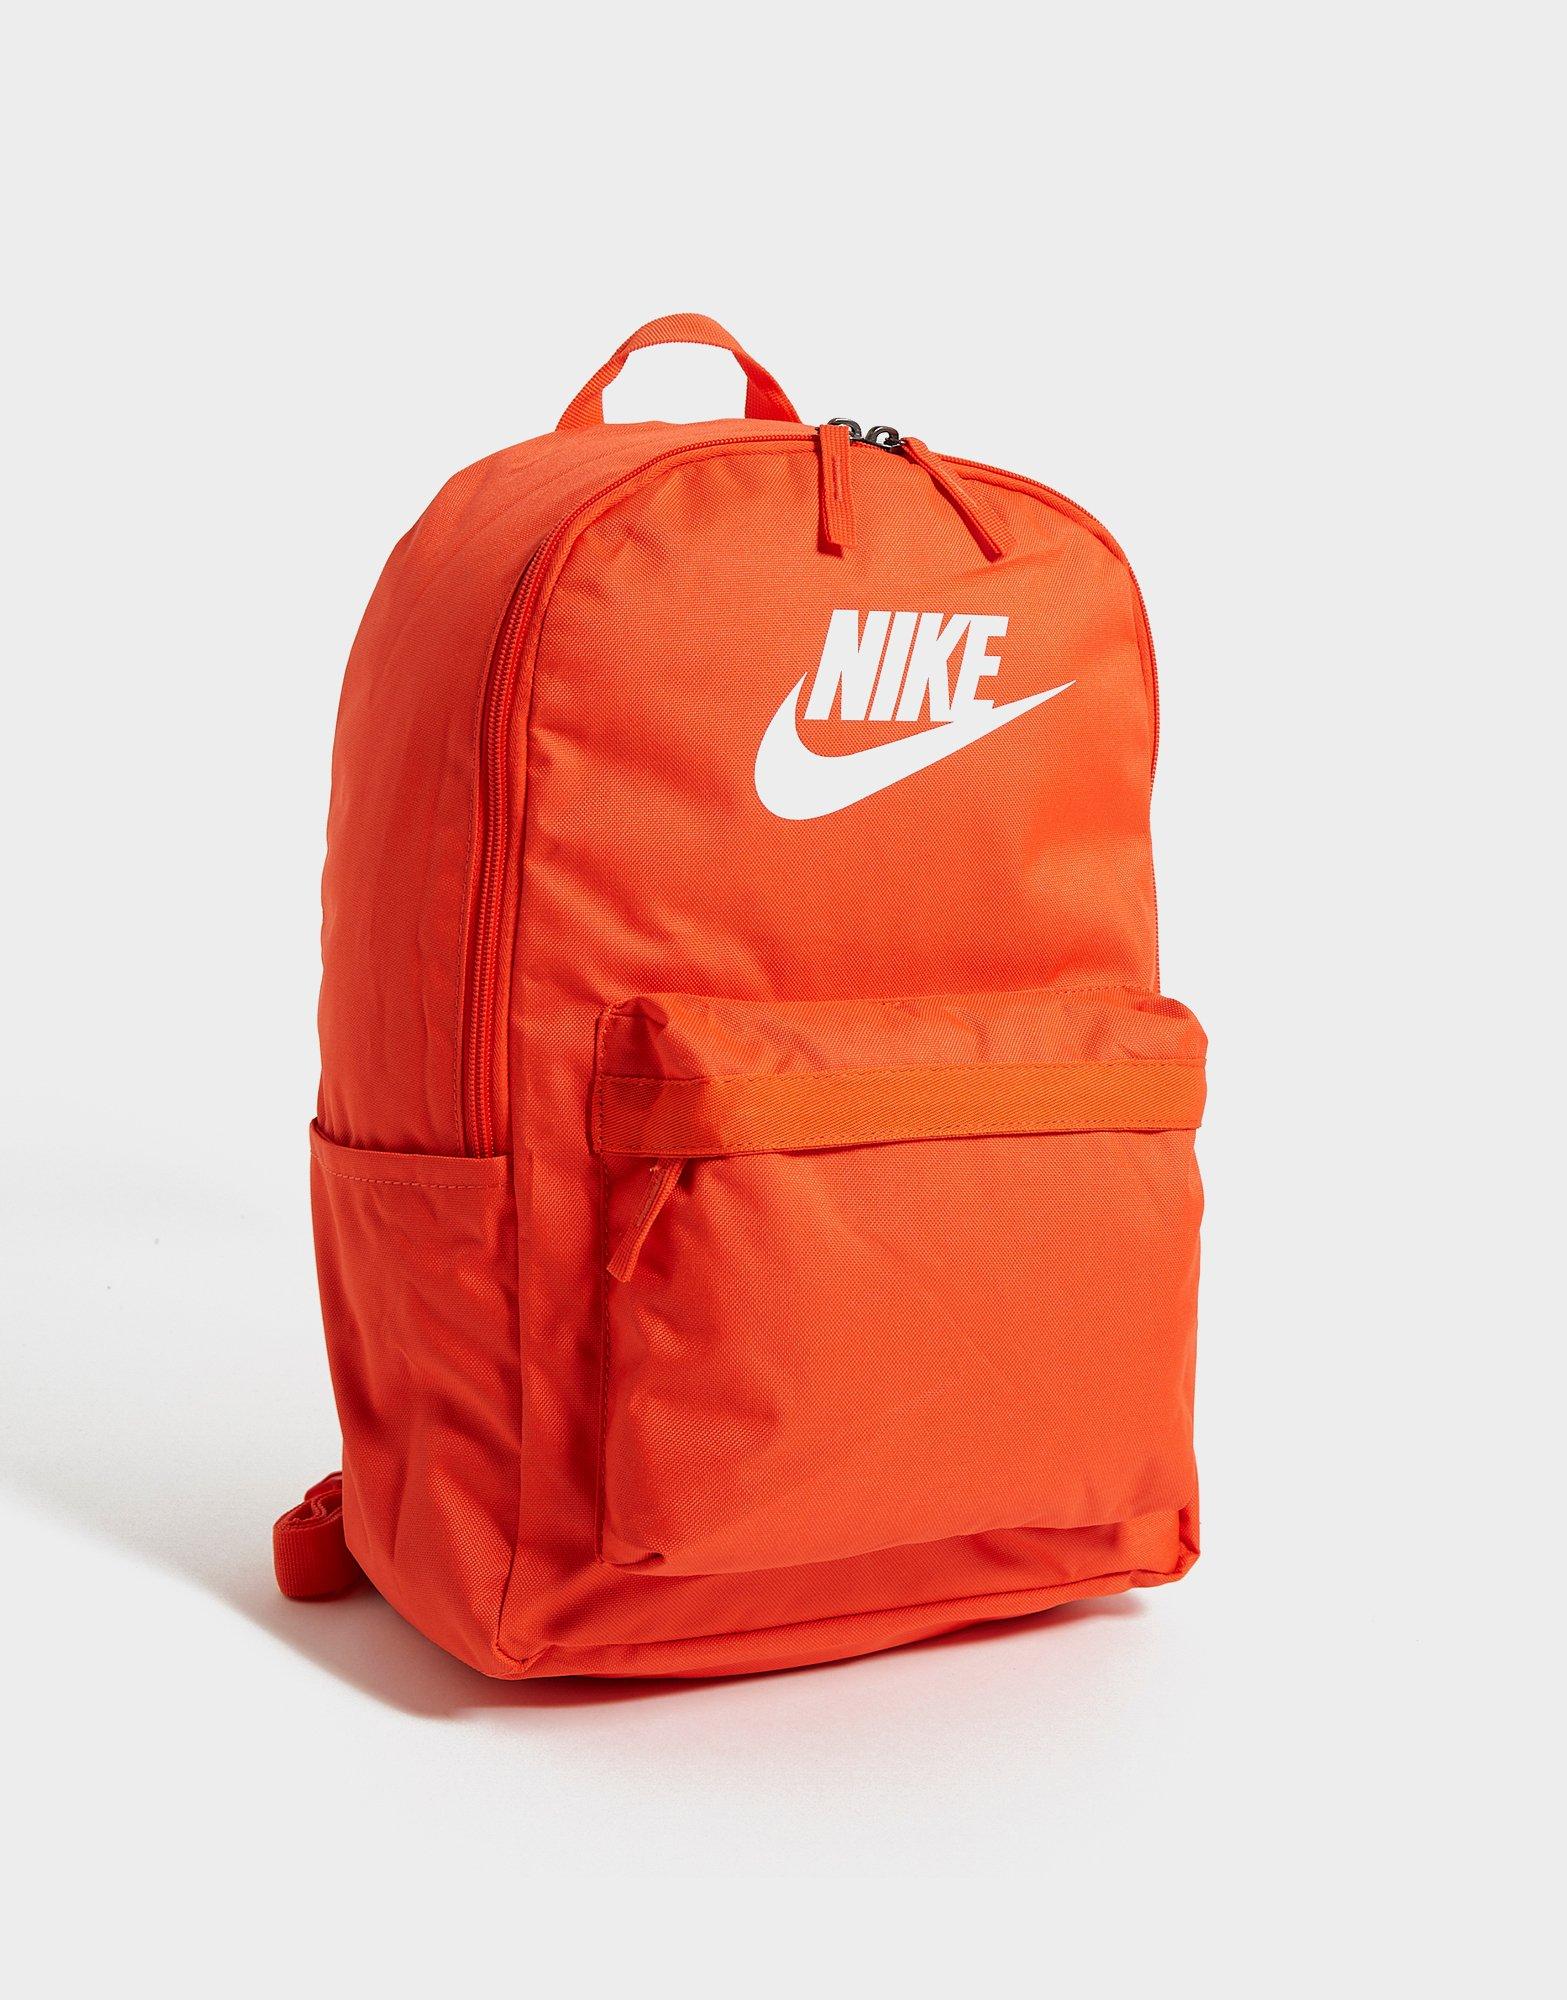 nike backpacks orange